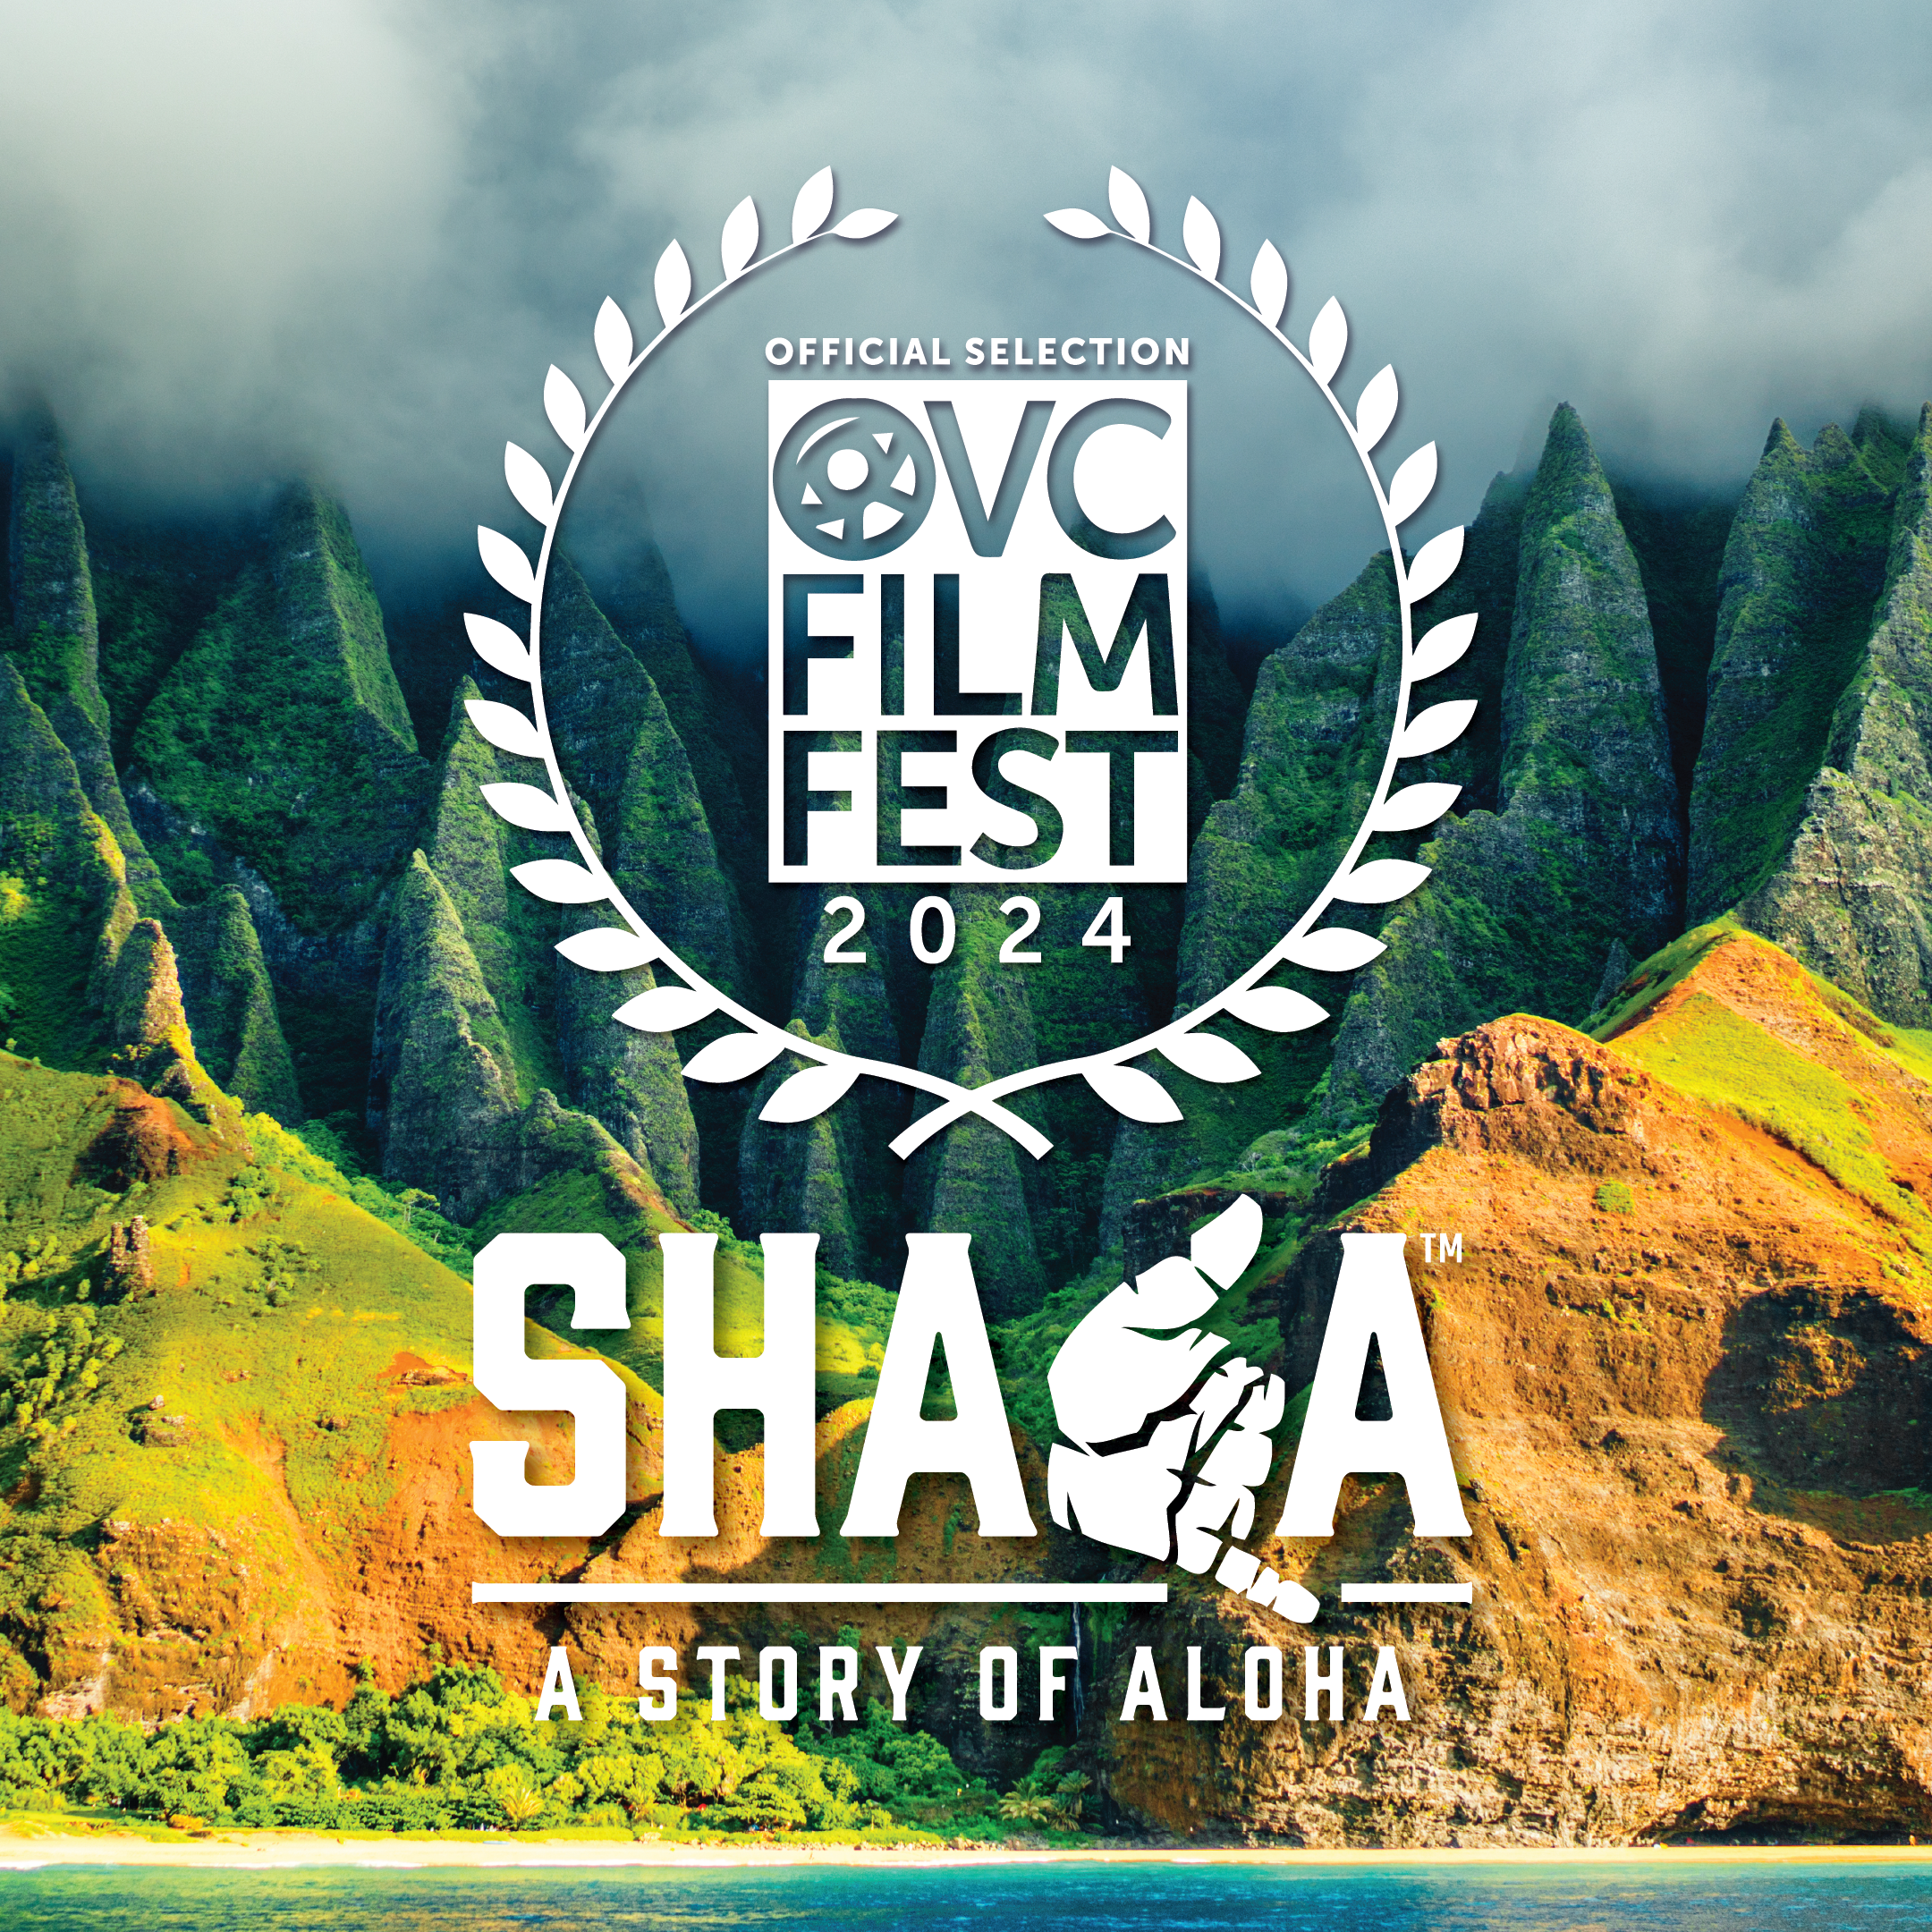 Shaka Film VCFest Laurel